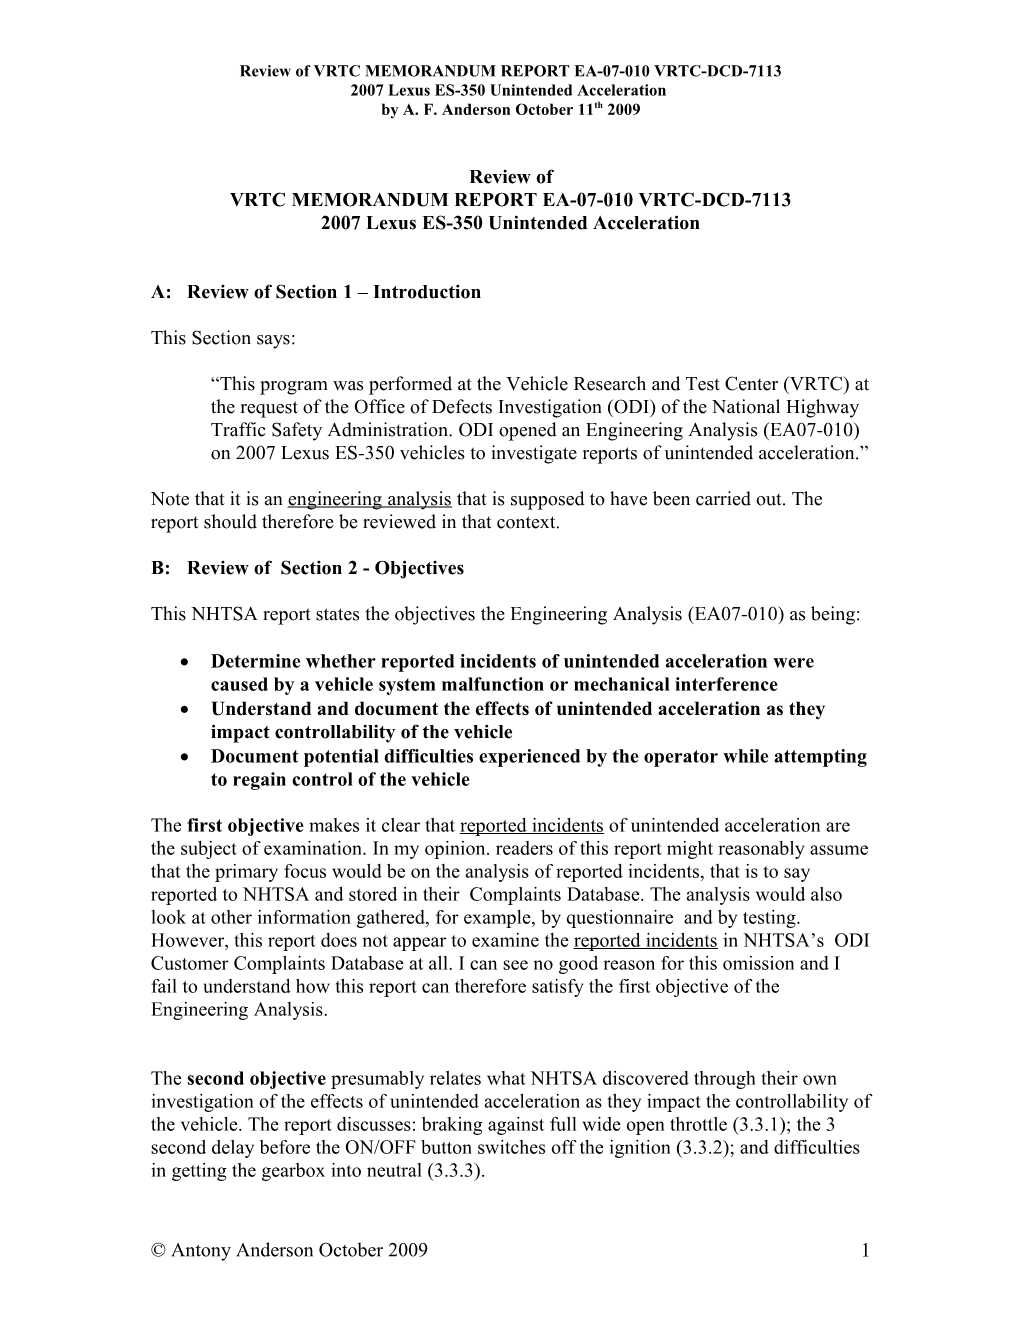 Review of VRTC MEMORANDUM REPORT EA-07-010 VRTC-DCD-7113